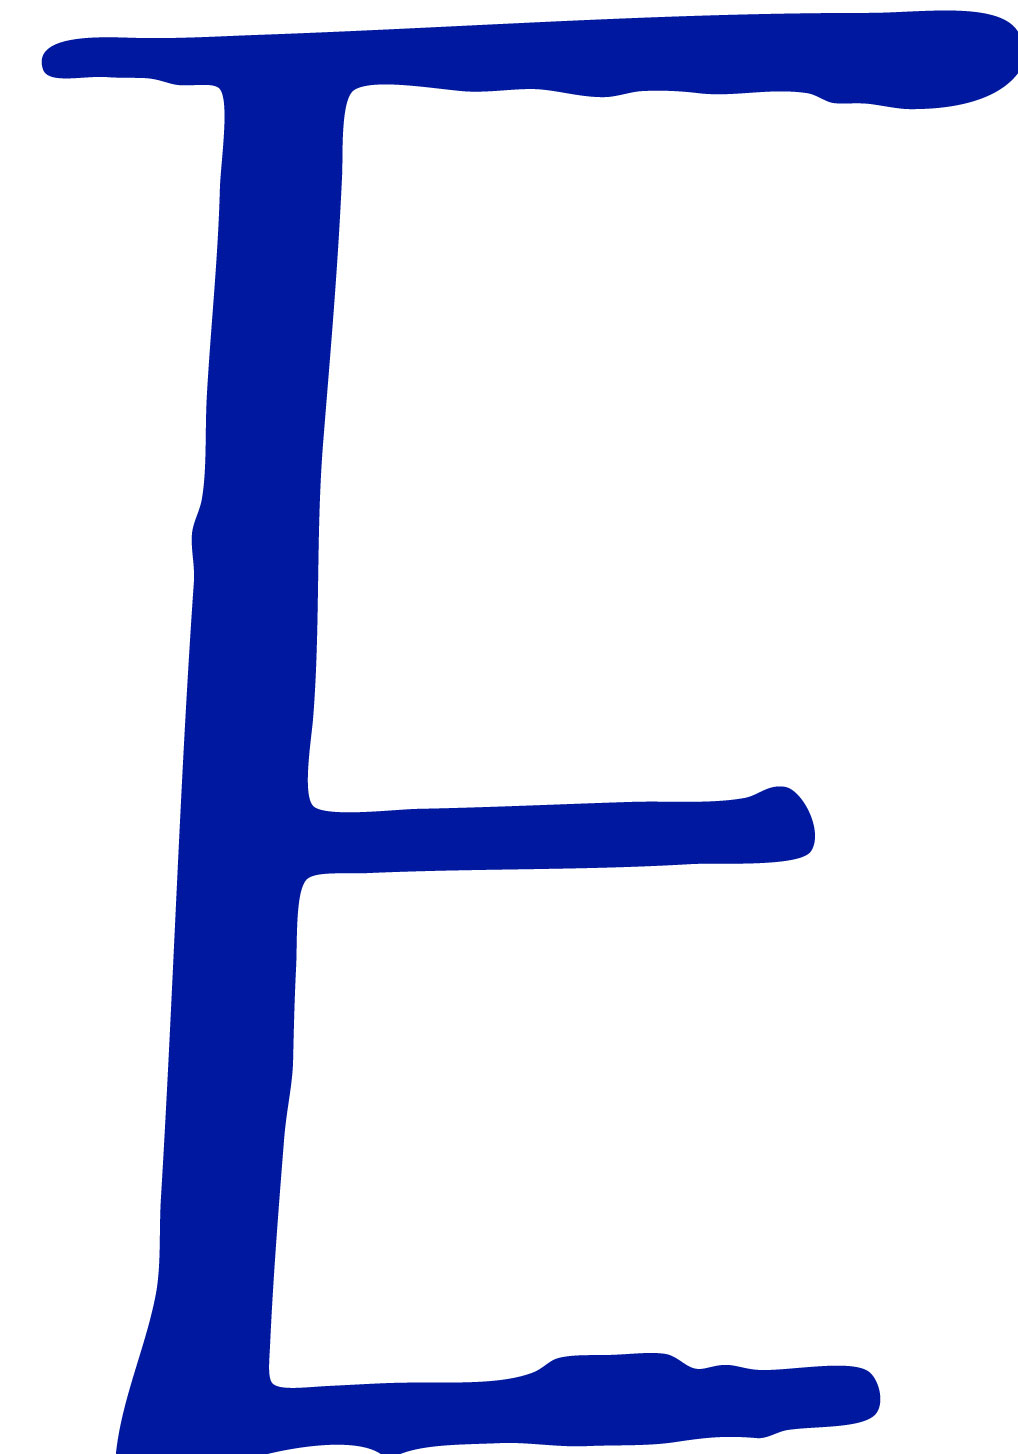 Cool Letter E Designs Cool designs: letter e